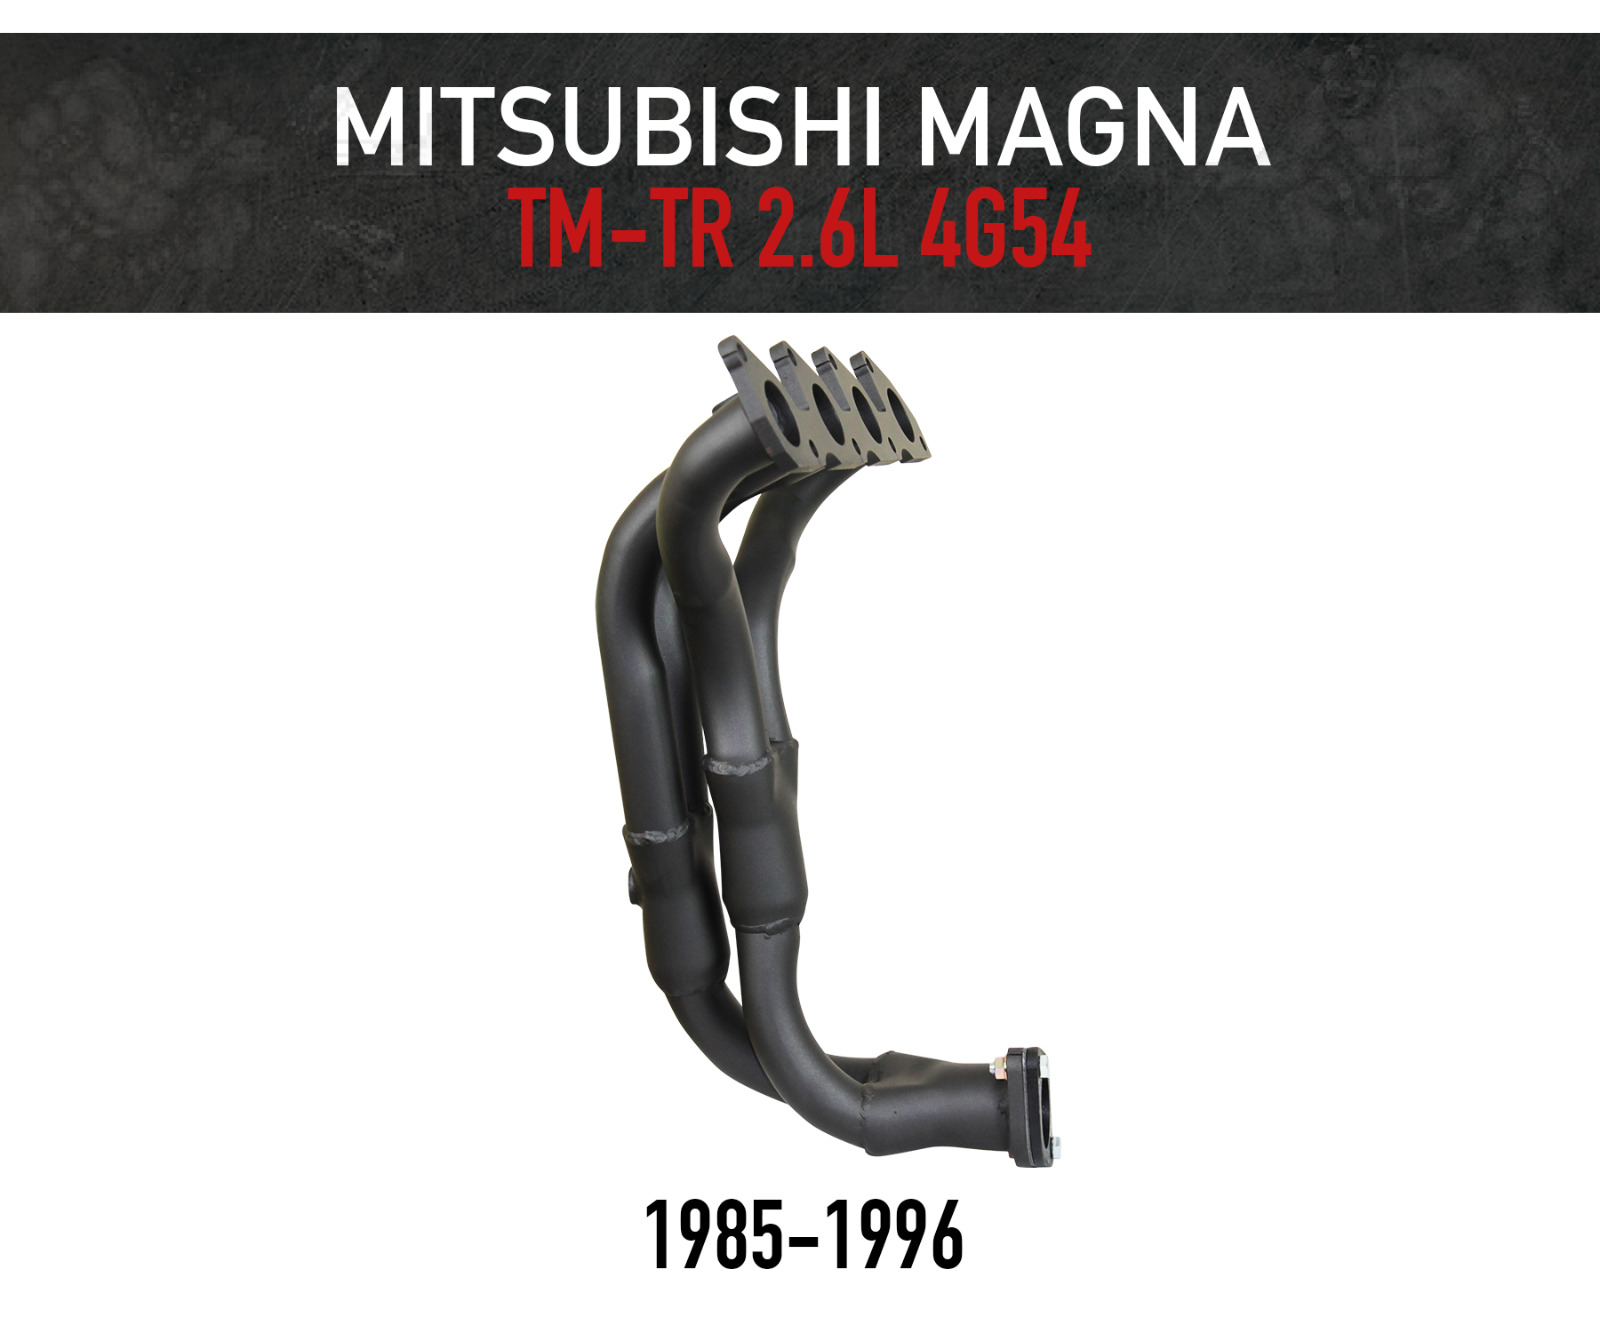 Headers / Extractors for Mitsubishi Magna TM-TR 2.6L 4G54 (1985-1996)